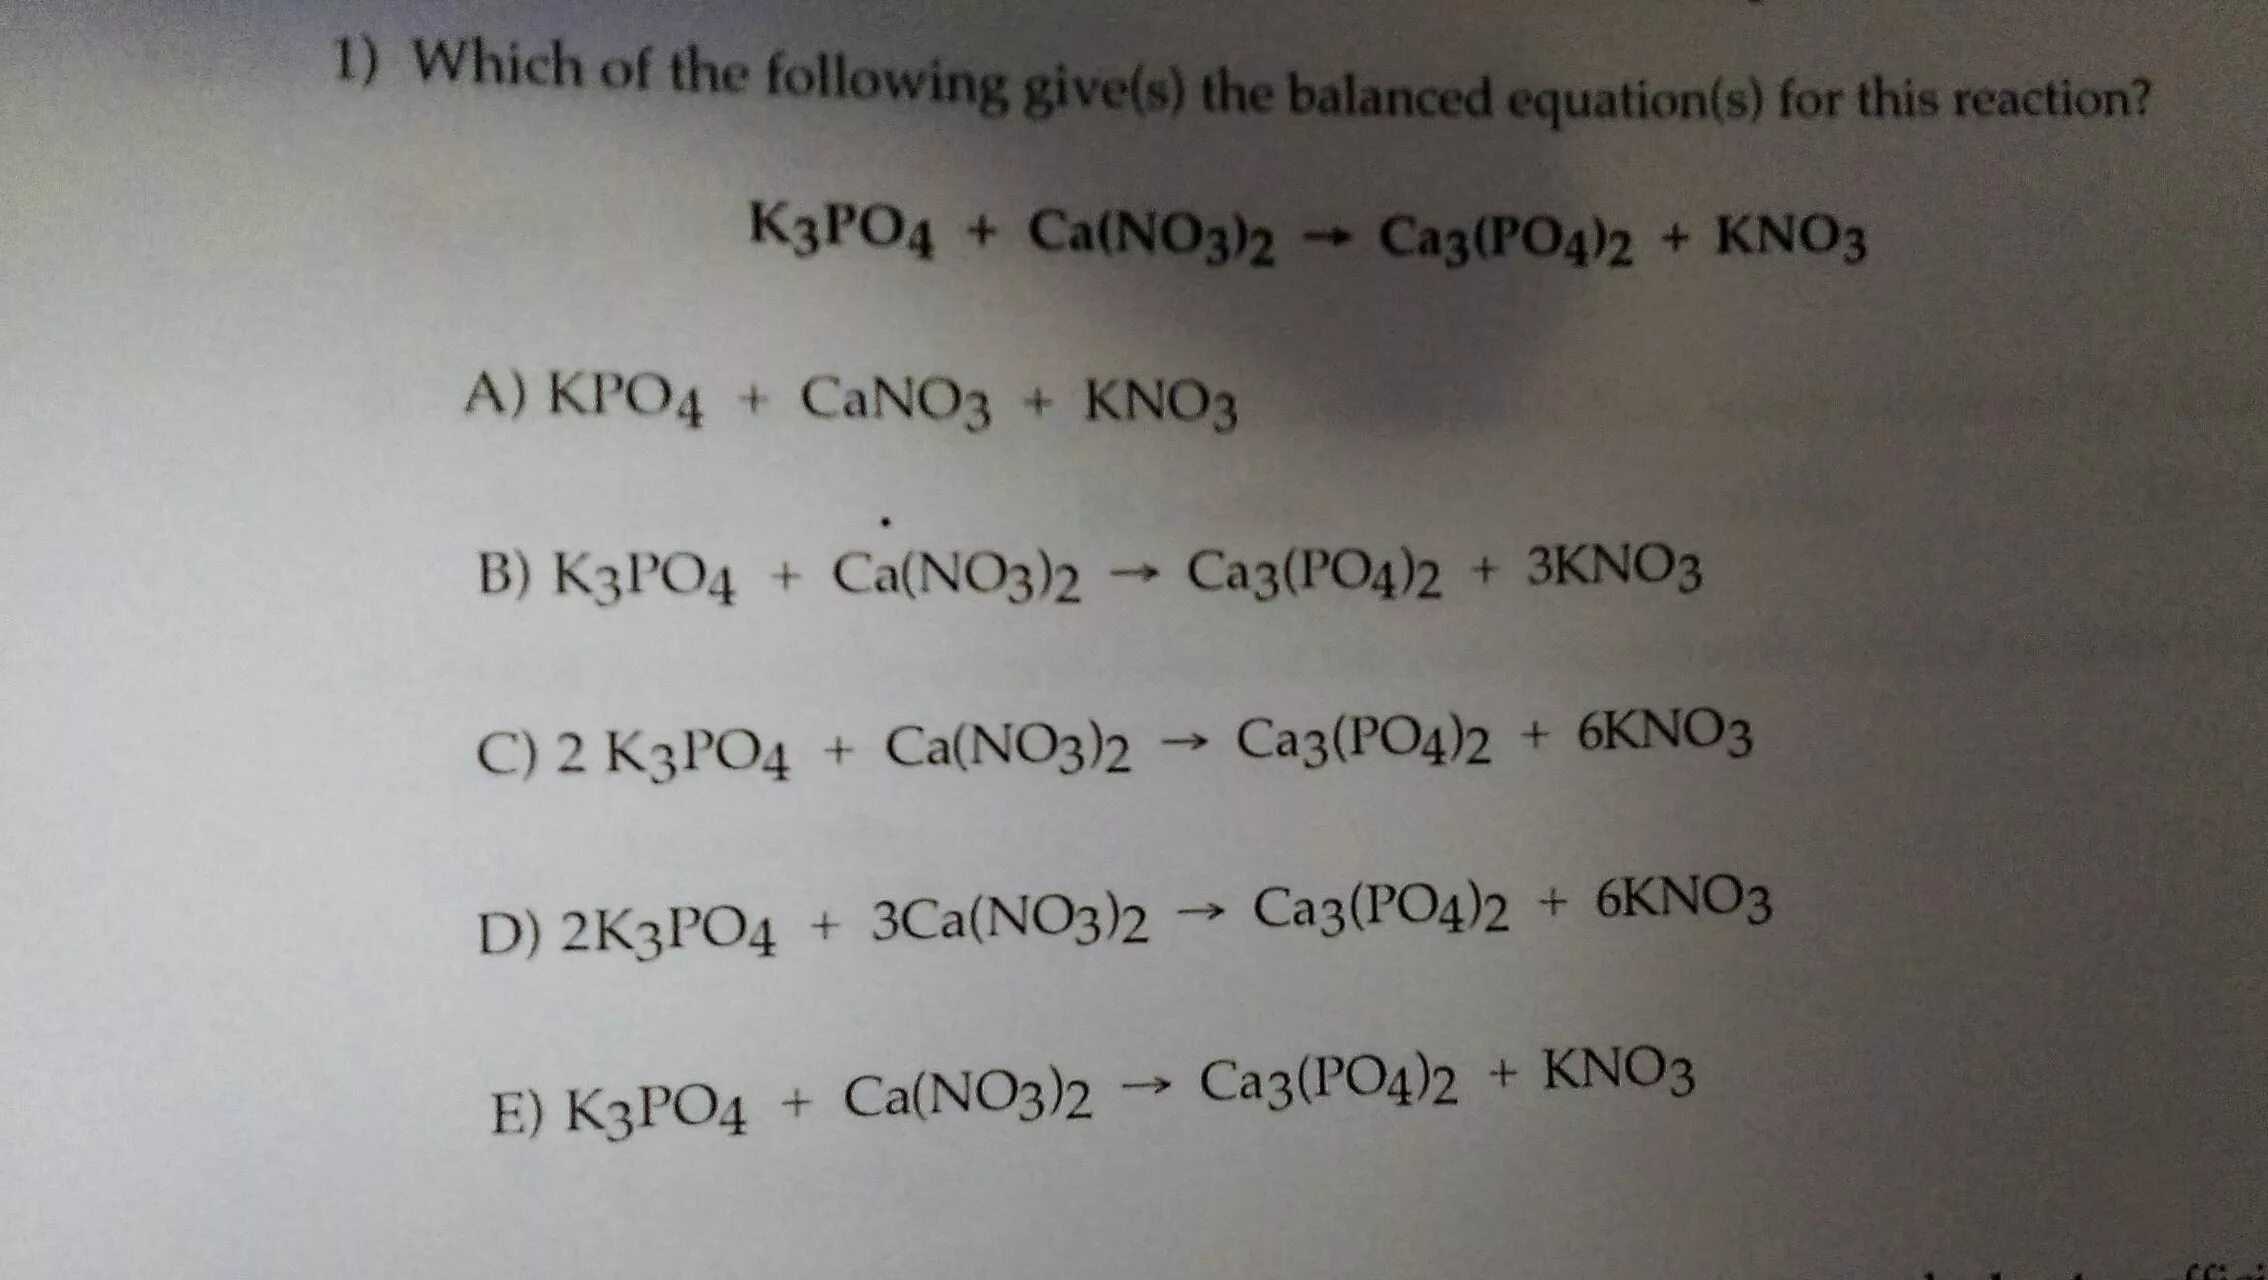 Kno3 что это. Kpo4. K3po4 kno3. Kpo4 название. 3ca(no3)2 + 2kpo4 = kno3 + ca3(po4)2.